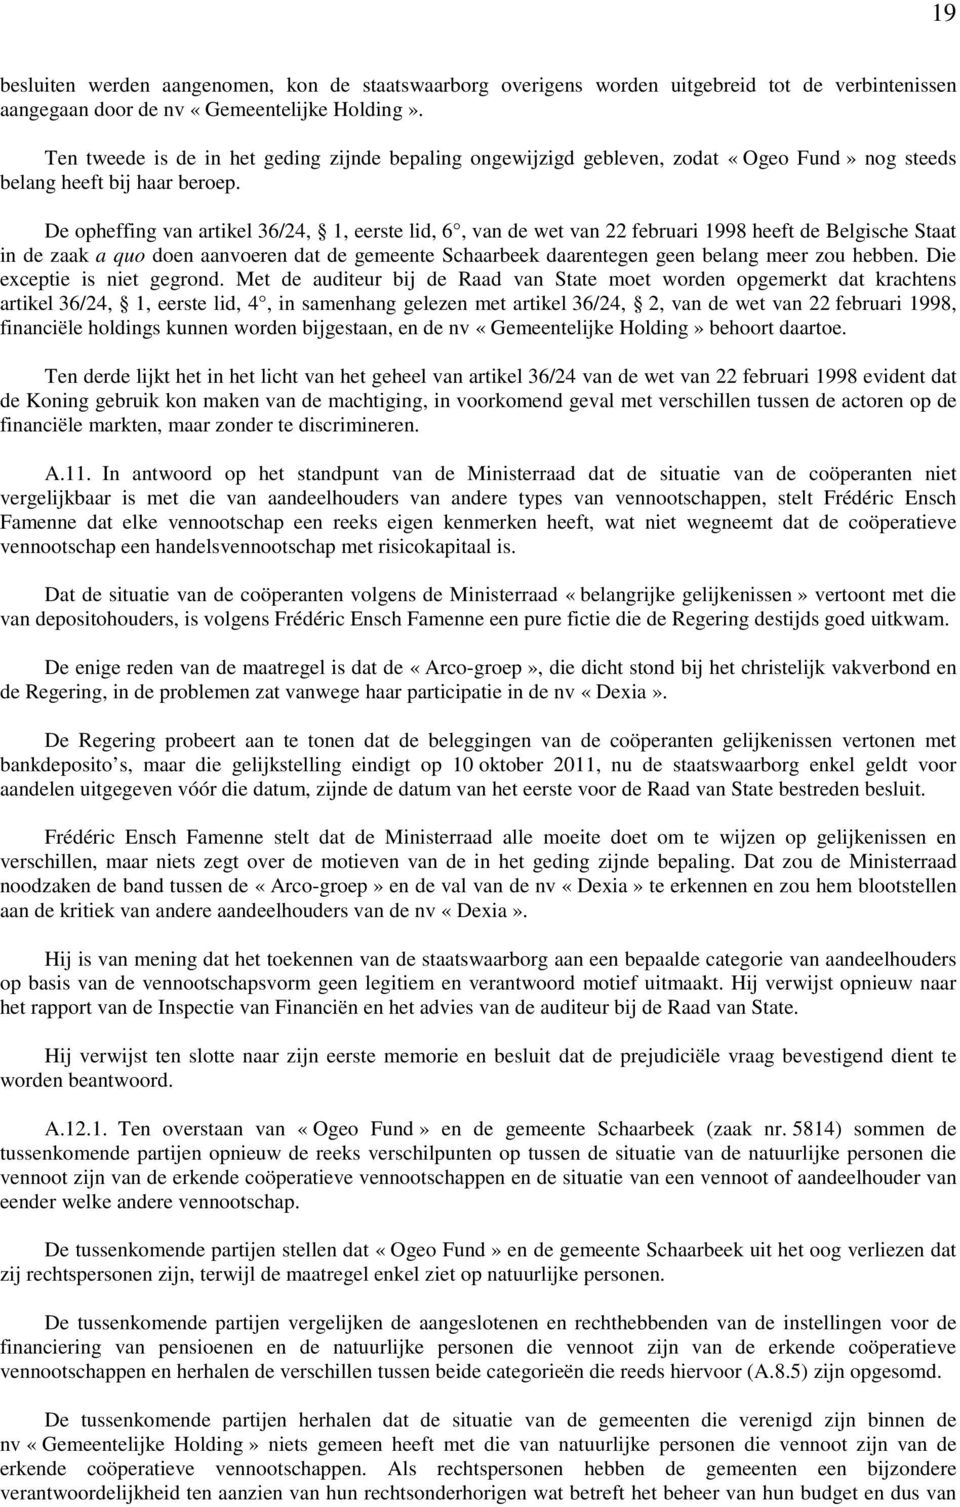 De opheffing van artikel 36/24, 1, eerste lid, 6, van de wet van 22 februari 1998 heeft de Belgische Staat in de zaak a quo doen aanvoeren dat de gemeente Schaarbeek daarentegen geen belang meer zou